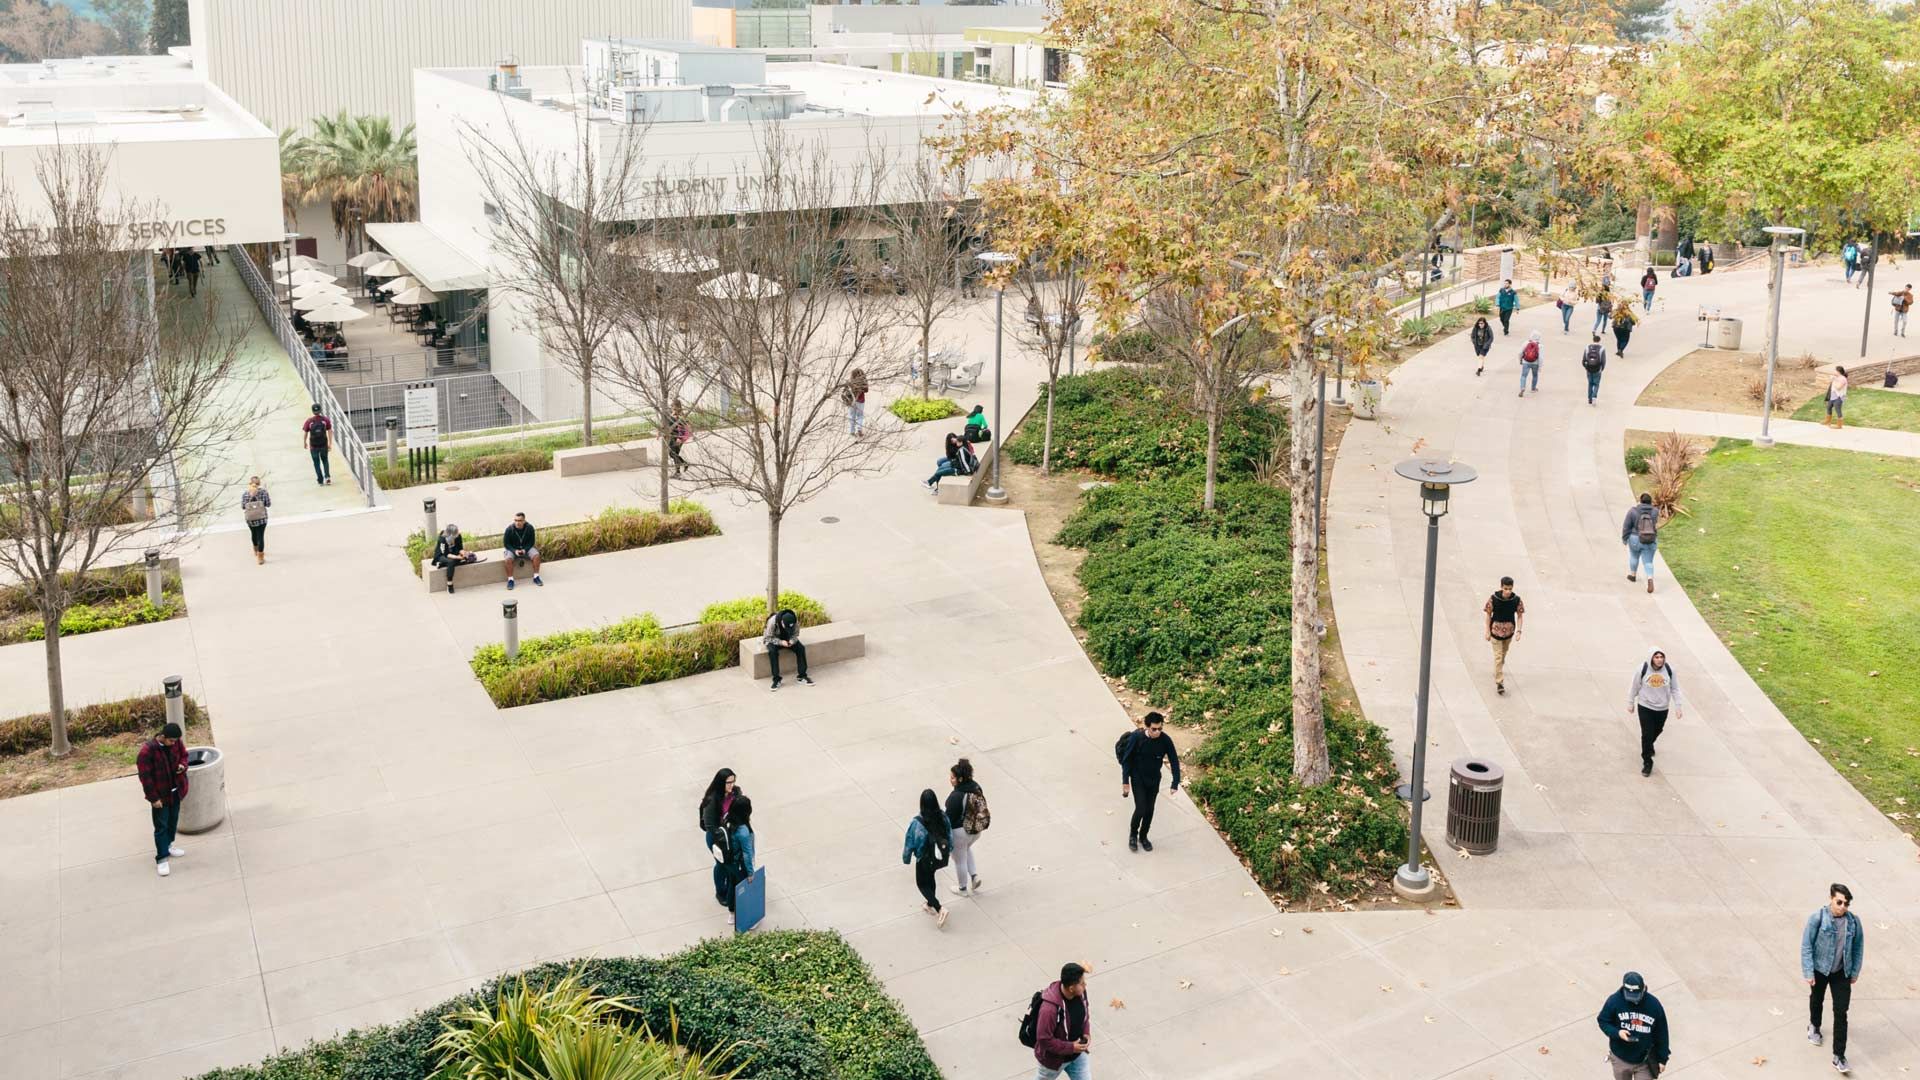 Et universitetscampus med grønne områder og gangbroer befolket af studerende iført rygsække